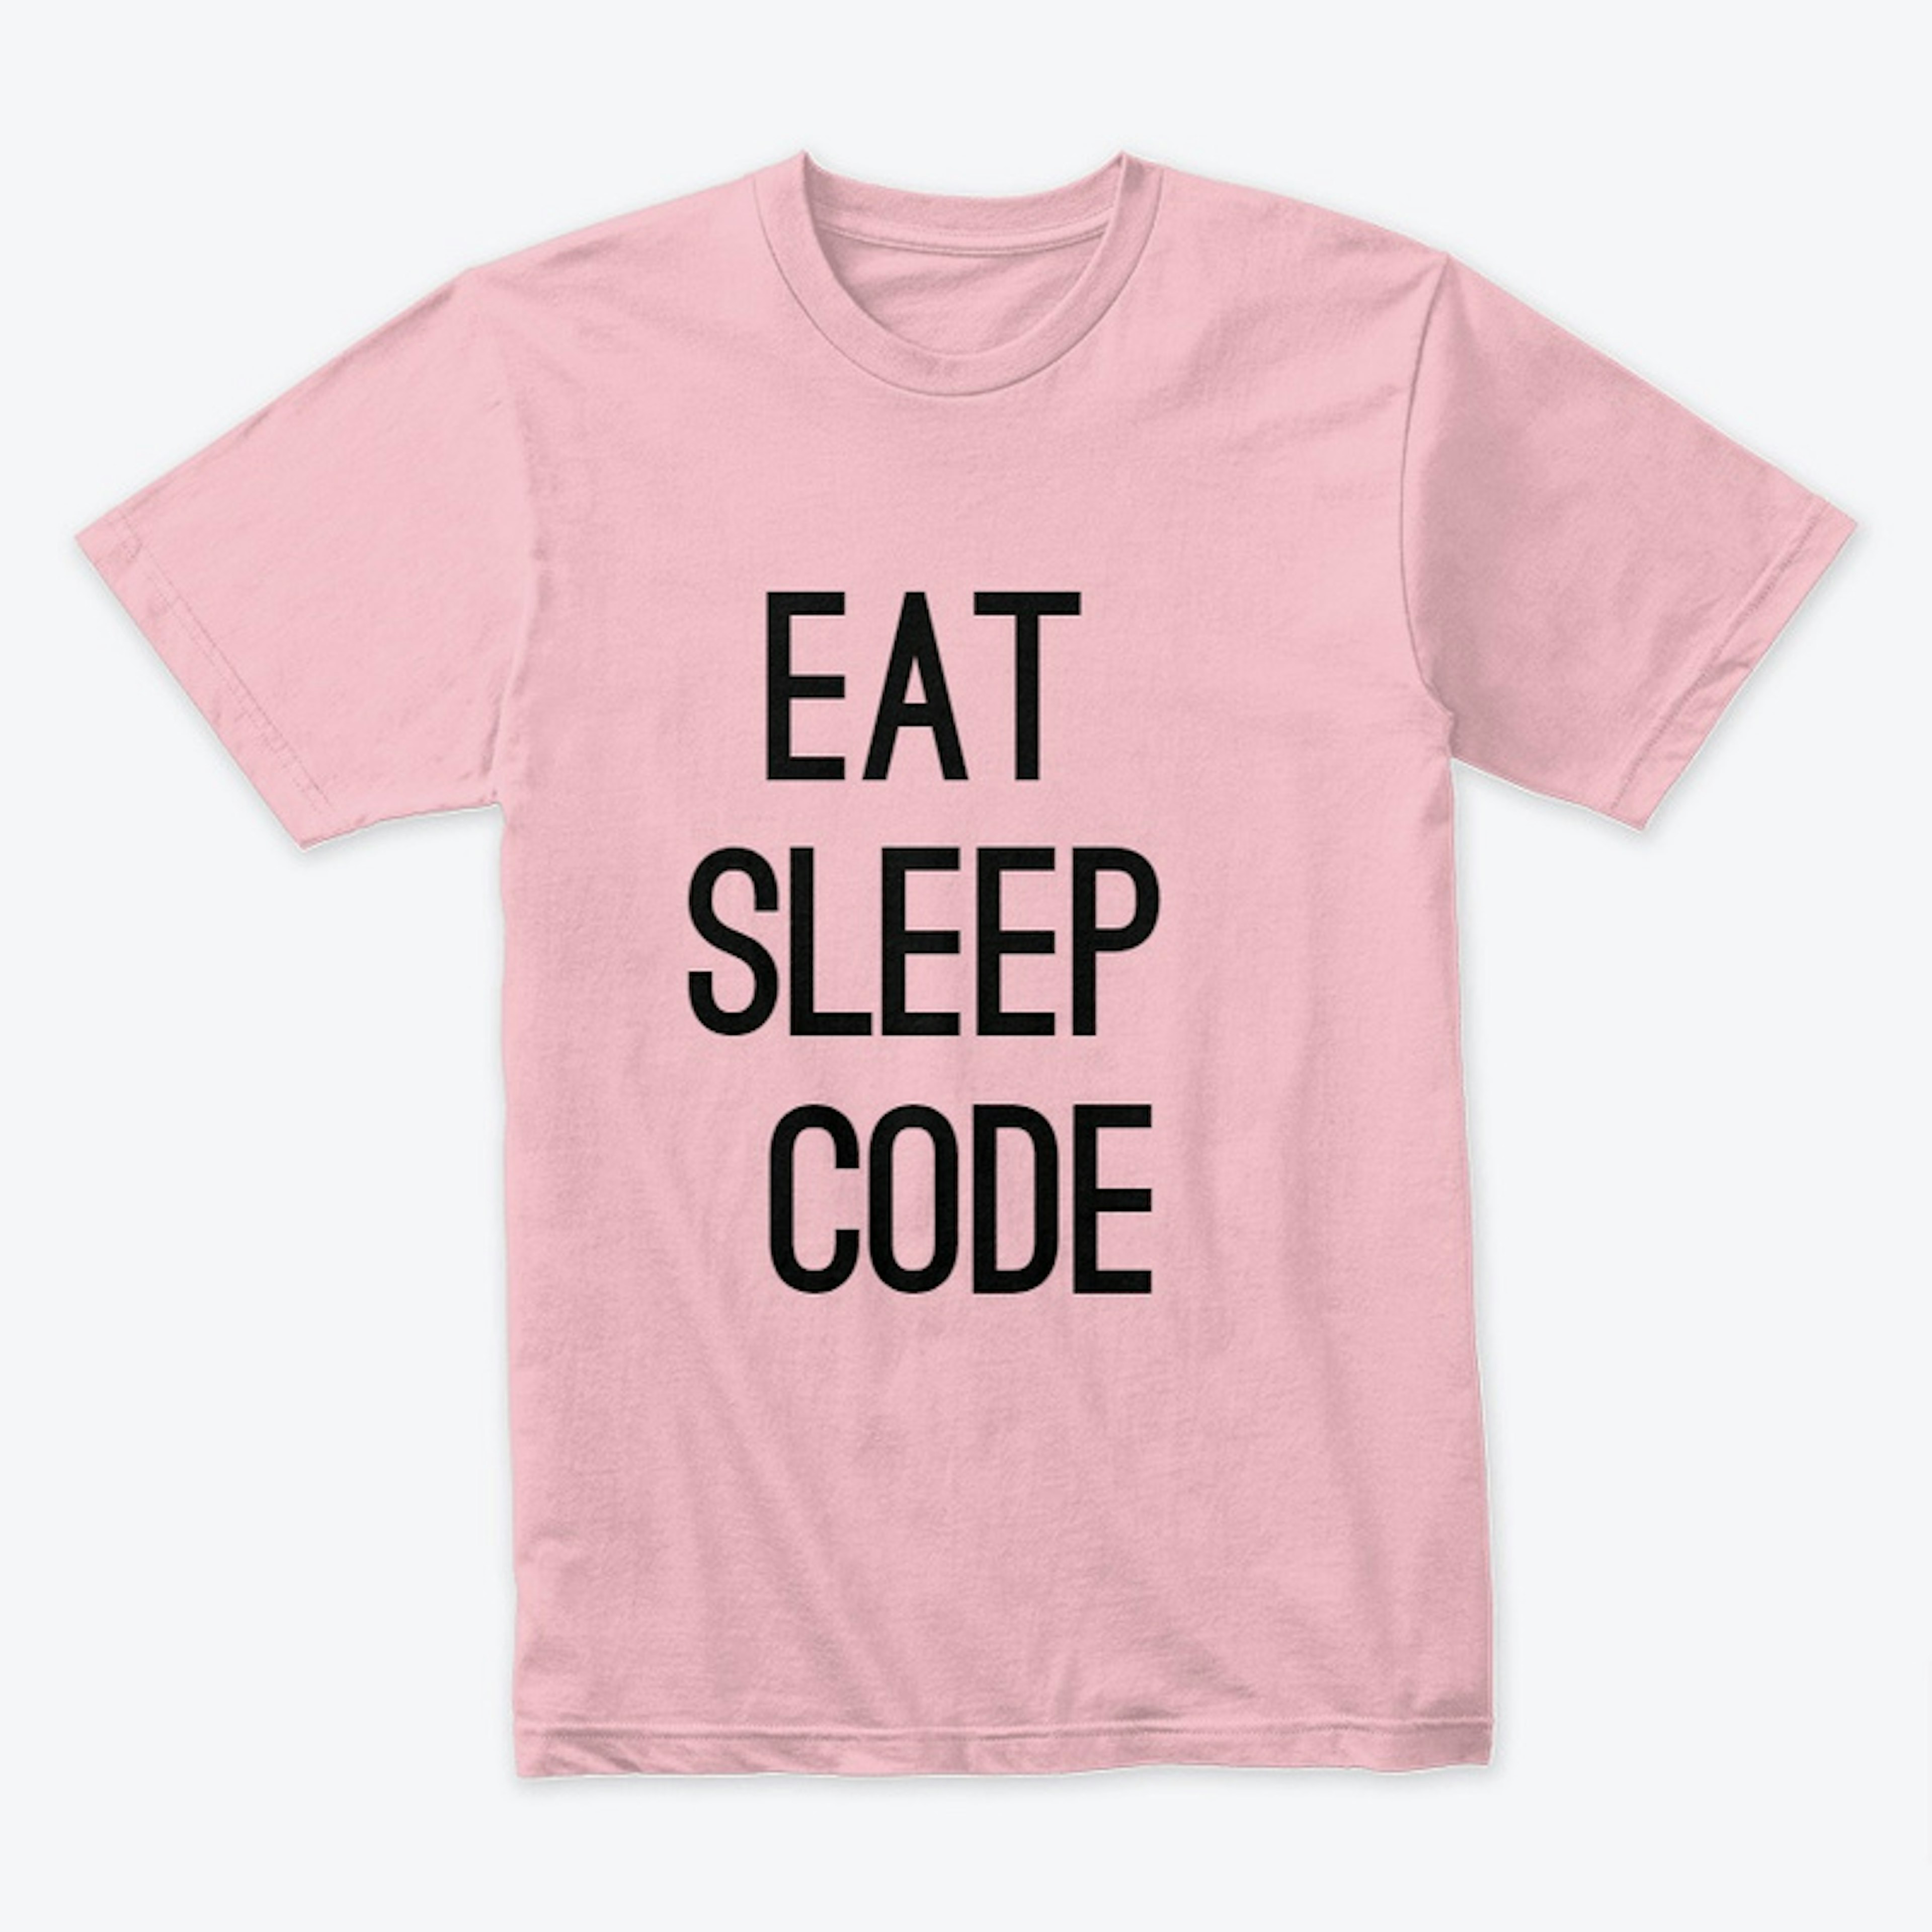 Eat, Sleep, Code